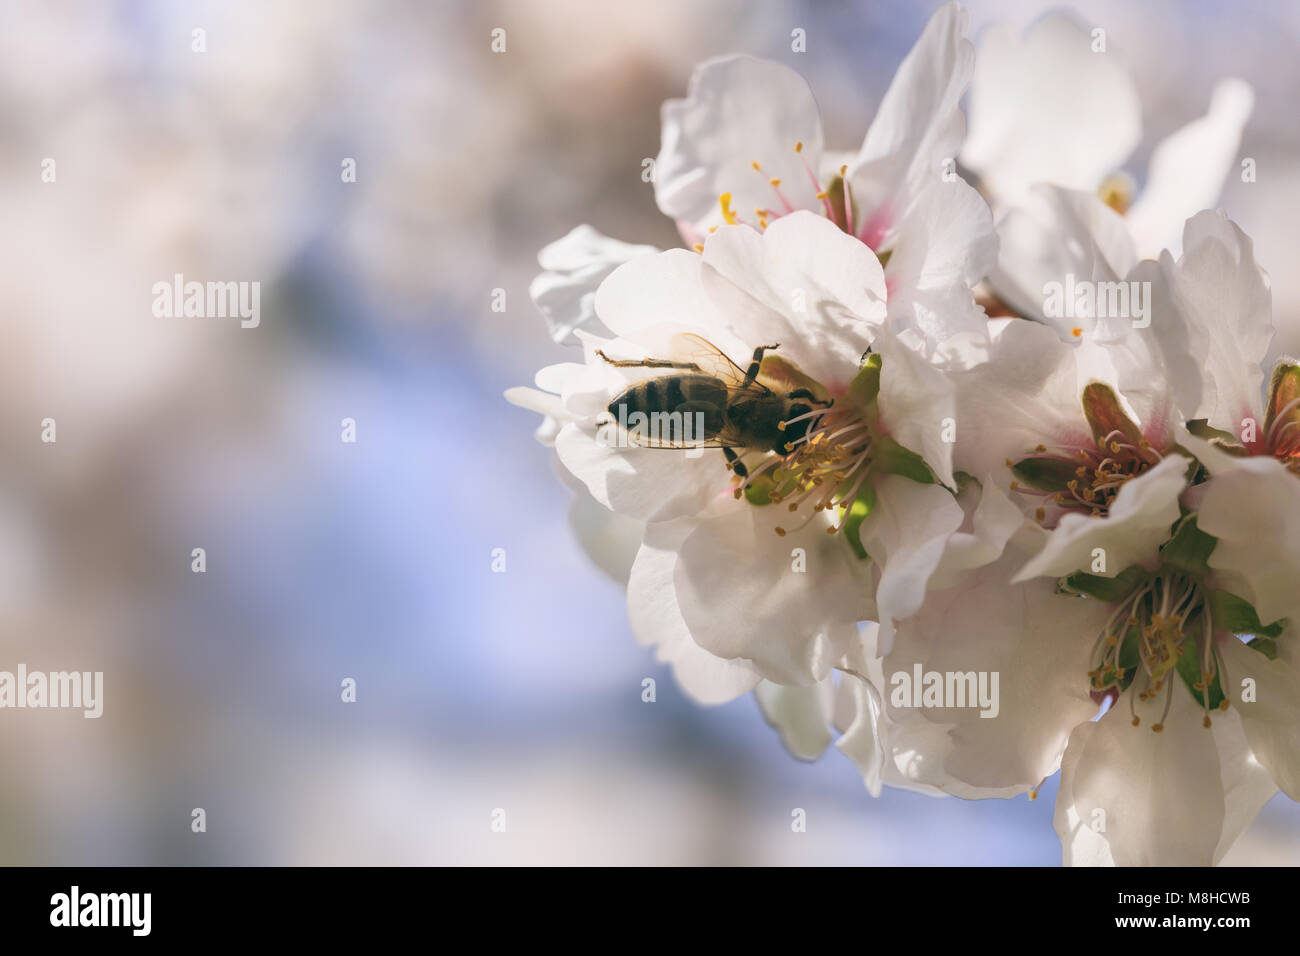 La recolección de miel de abeja polen de flores de almendro, acercamiento, fondo desenfocado Foto de stock